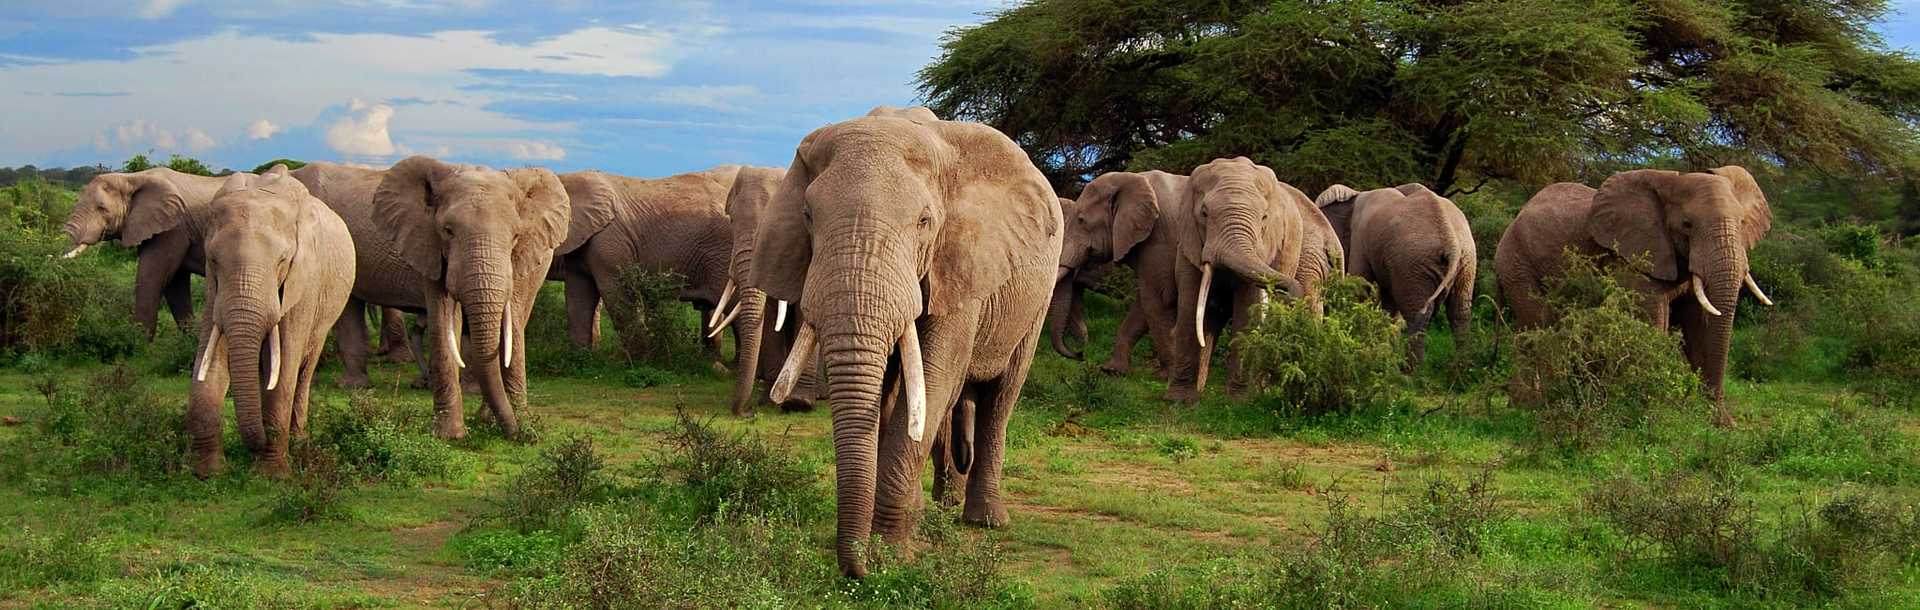 A big herd of wild elephants in Botswana, Africa